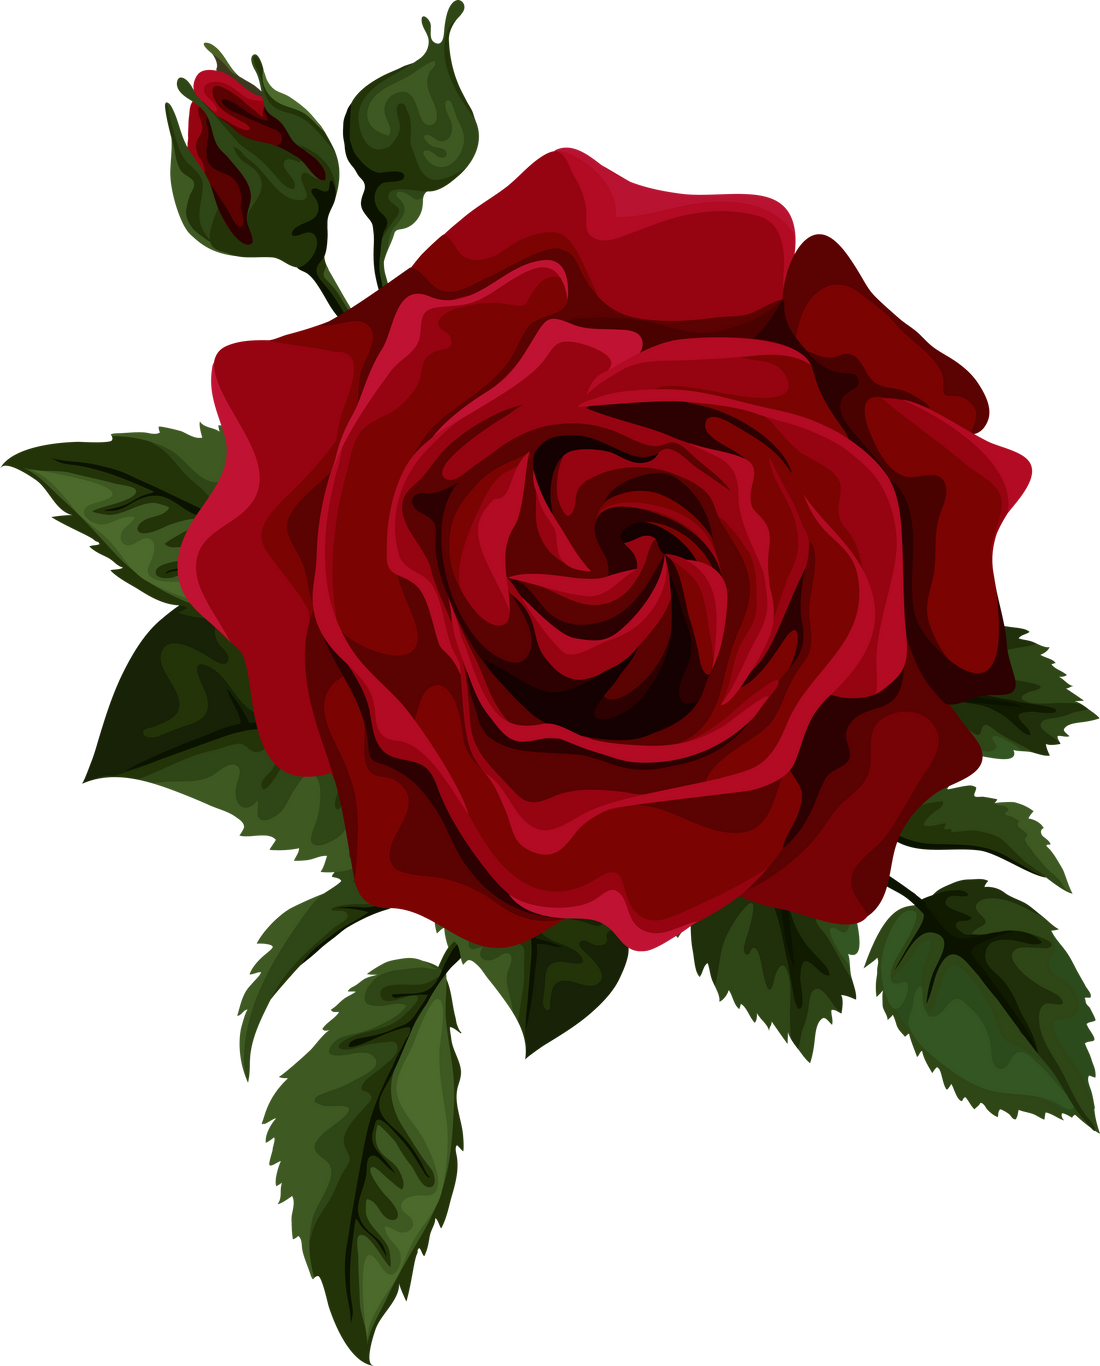 Illustration of a Rose